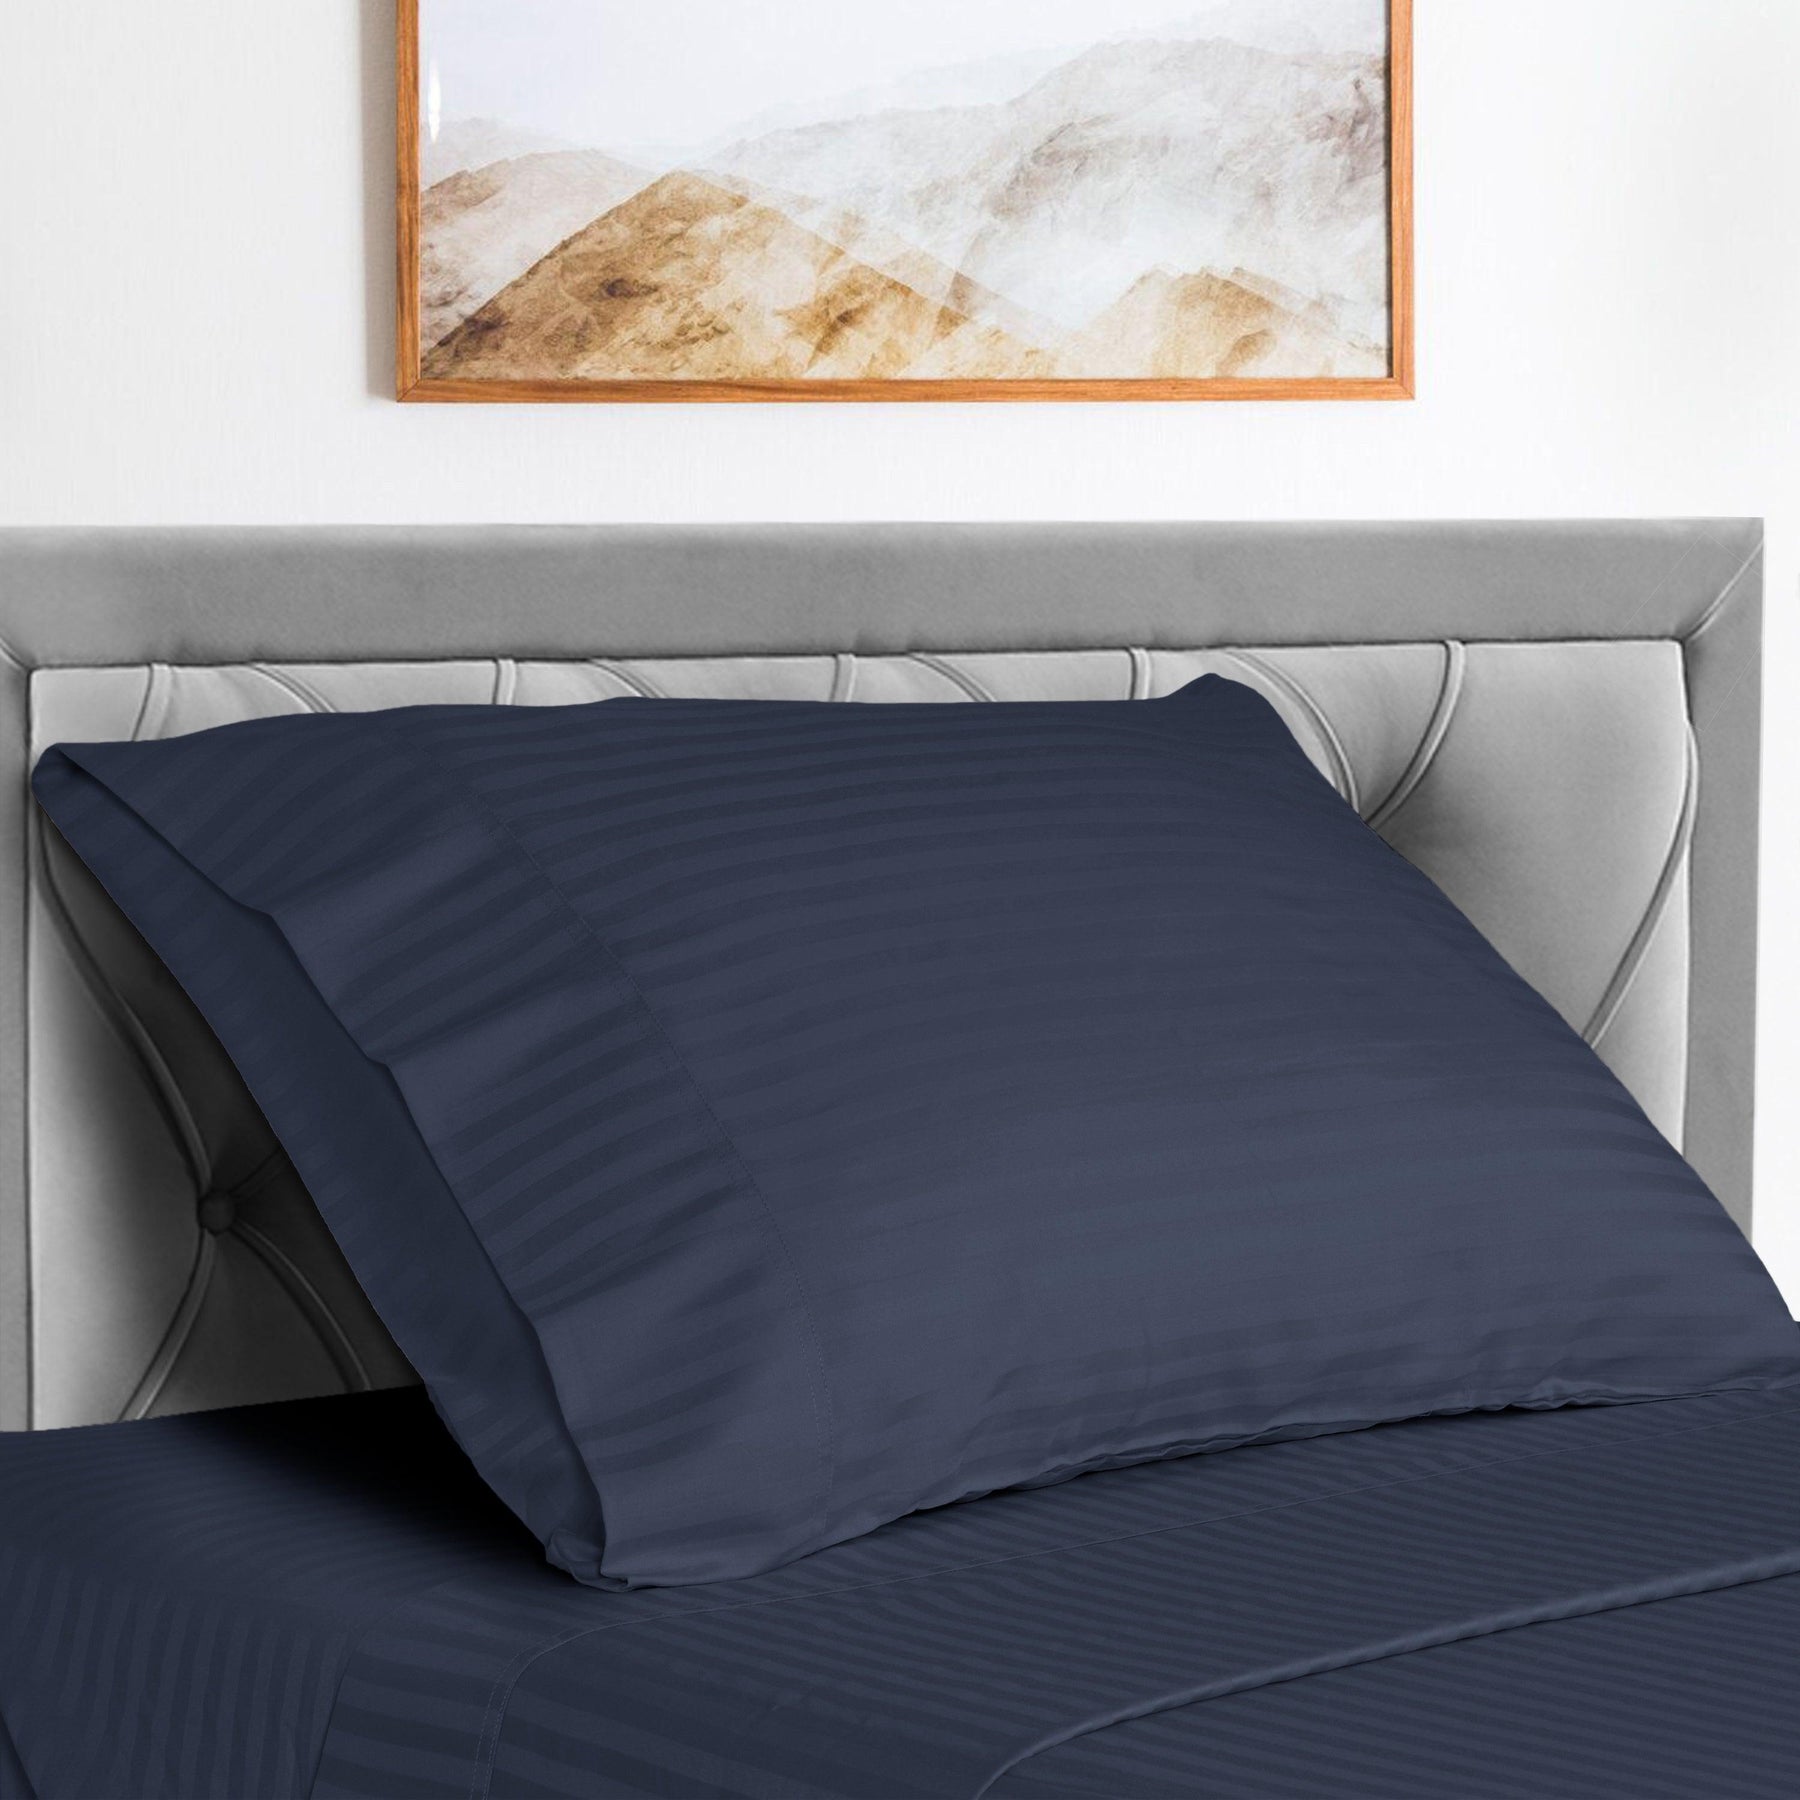  Superior Microfiber Wrinkle Resistant and Breathable Stripe Deep Pocket Bed Sheet Set - Navy Blue